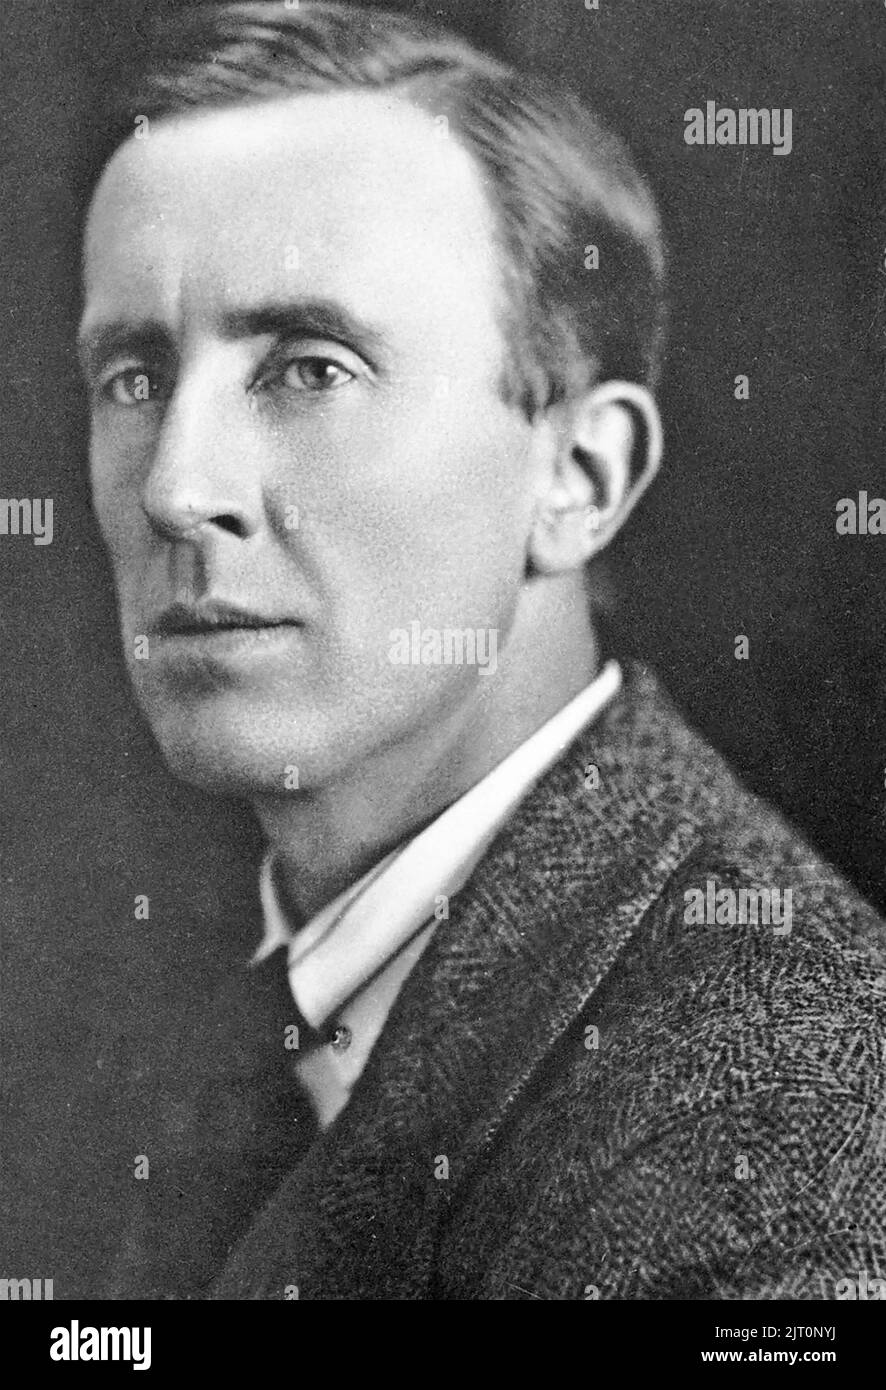 J.R.R.TOLKIEN (1892-19730 autor, poeta y académico inglés sobre 1925 Foto de stock